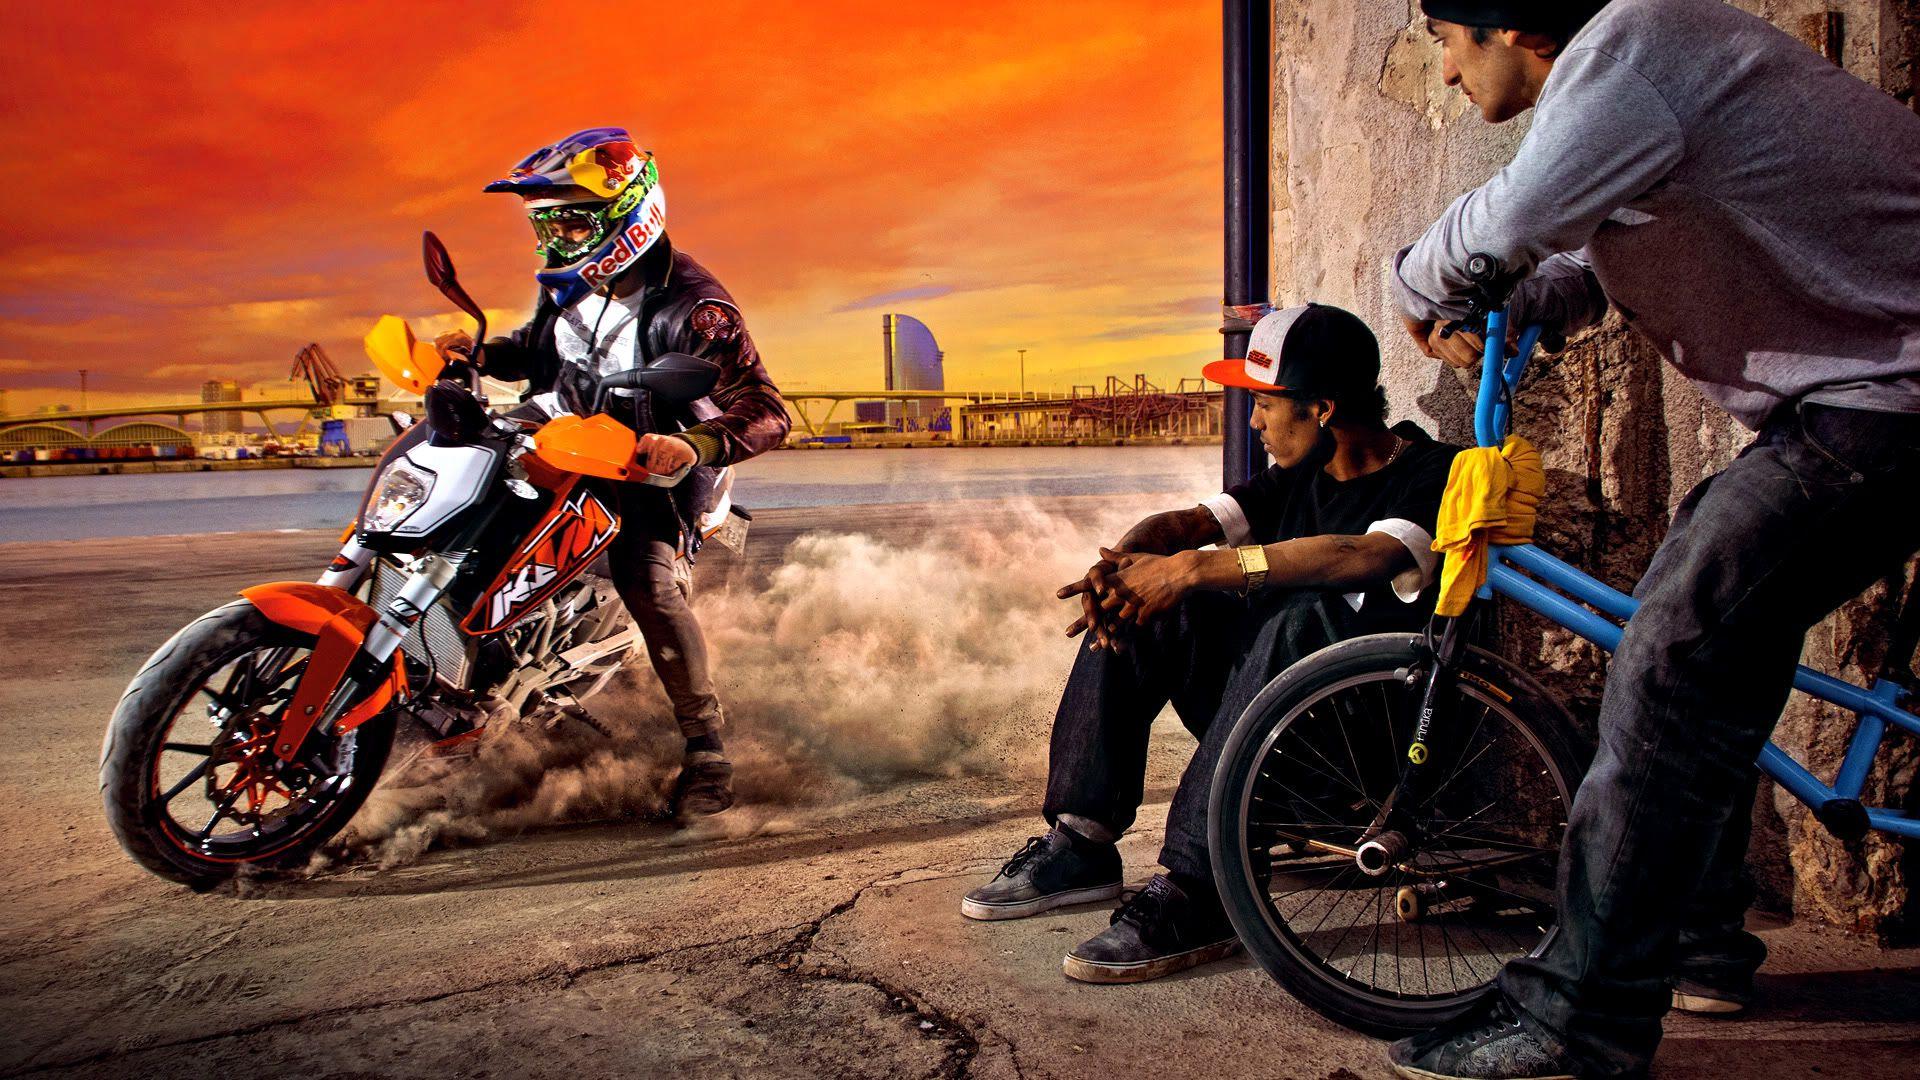 Motocross KTM Bike Wallpaper, 50 Free Motocross KTM Bike Wallpaper